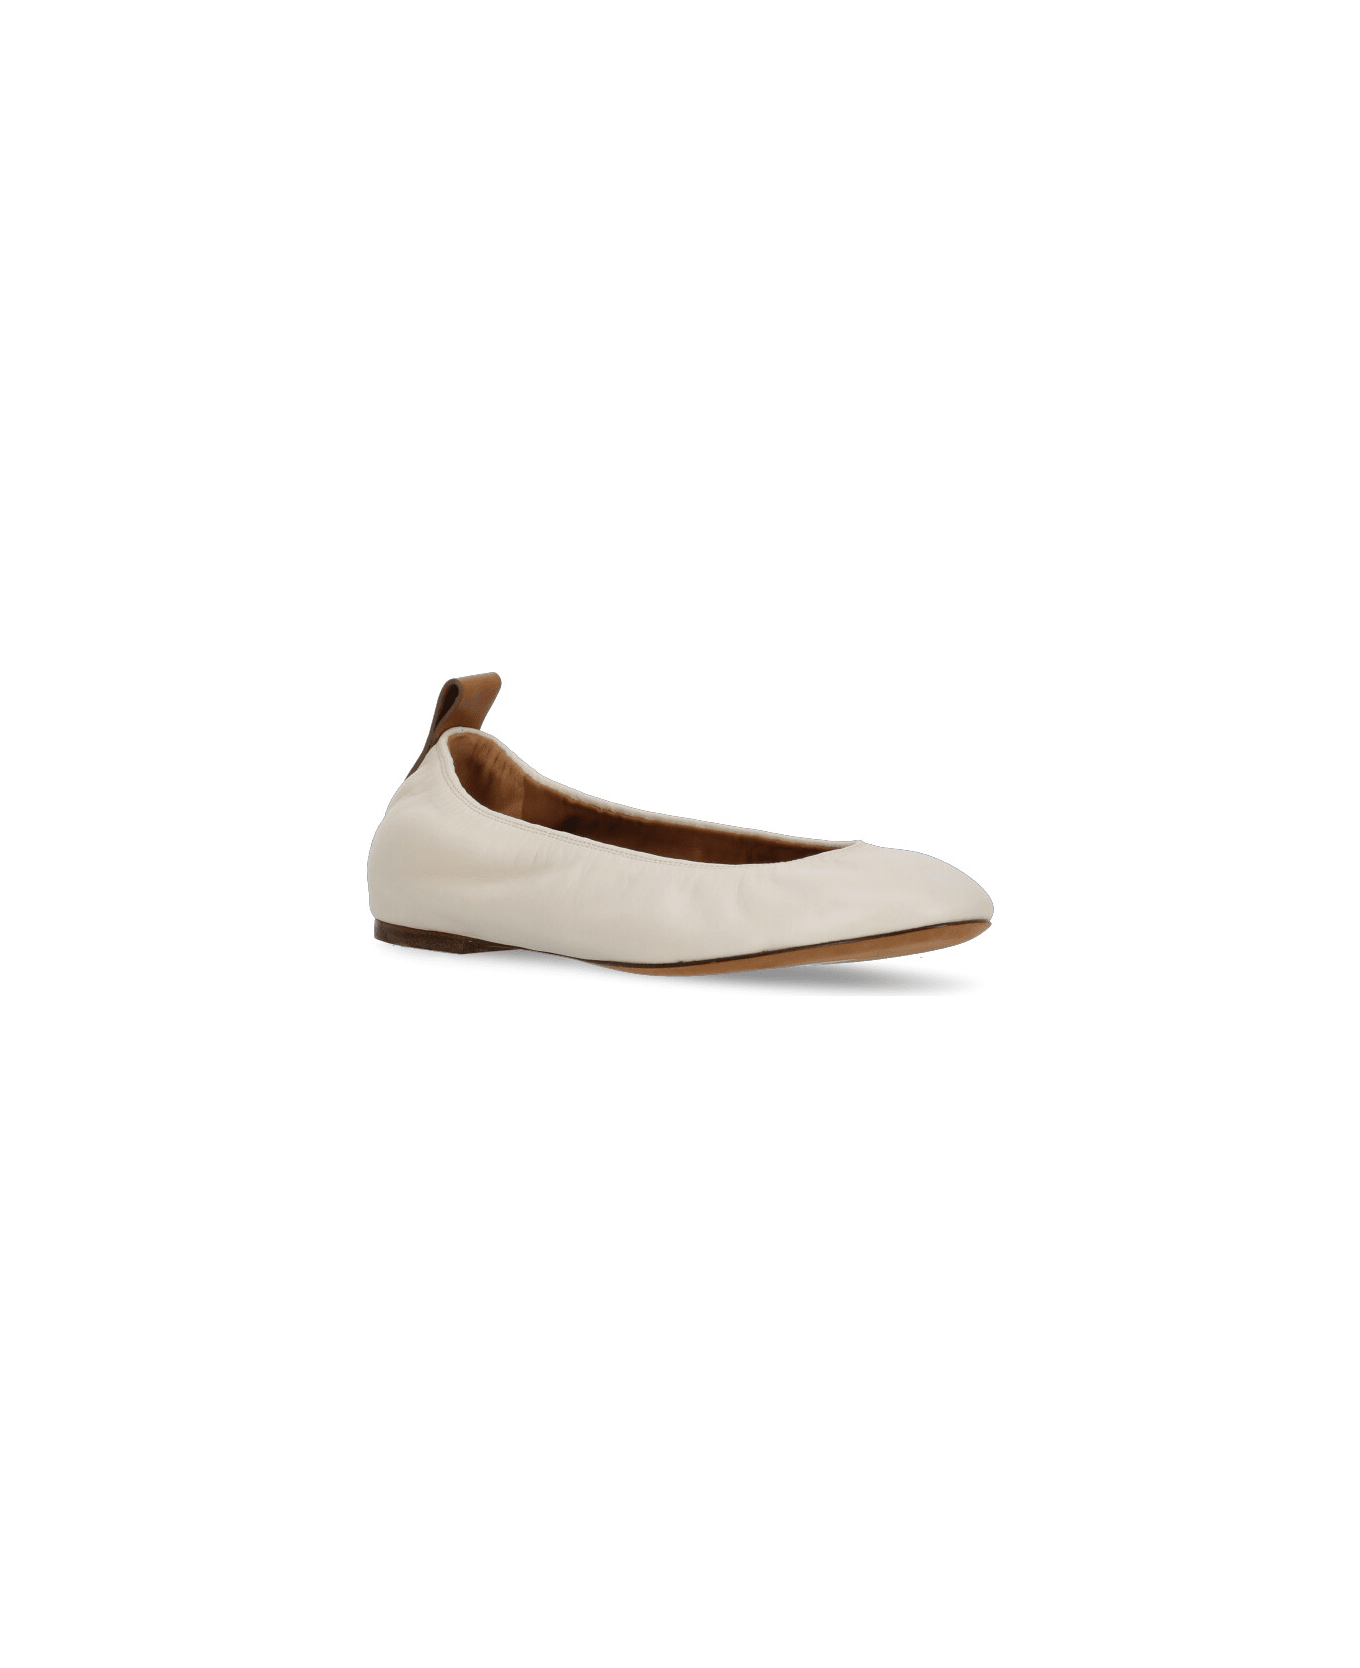 Lanvin Leather Ballet Shoes - Beige